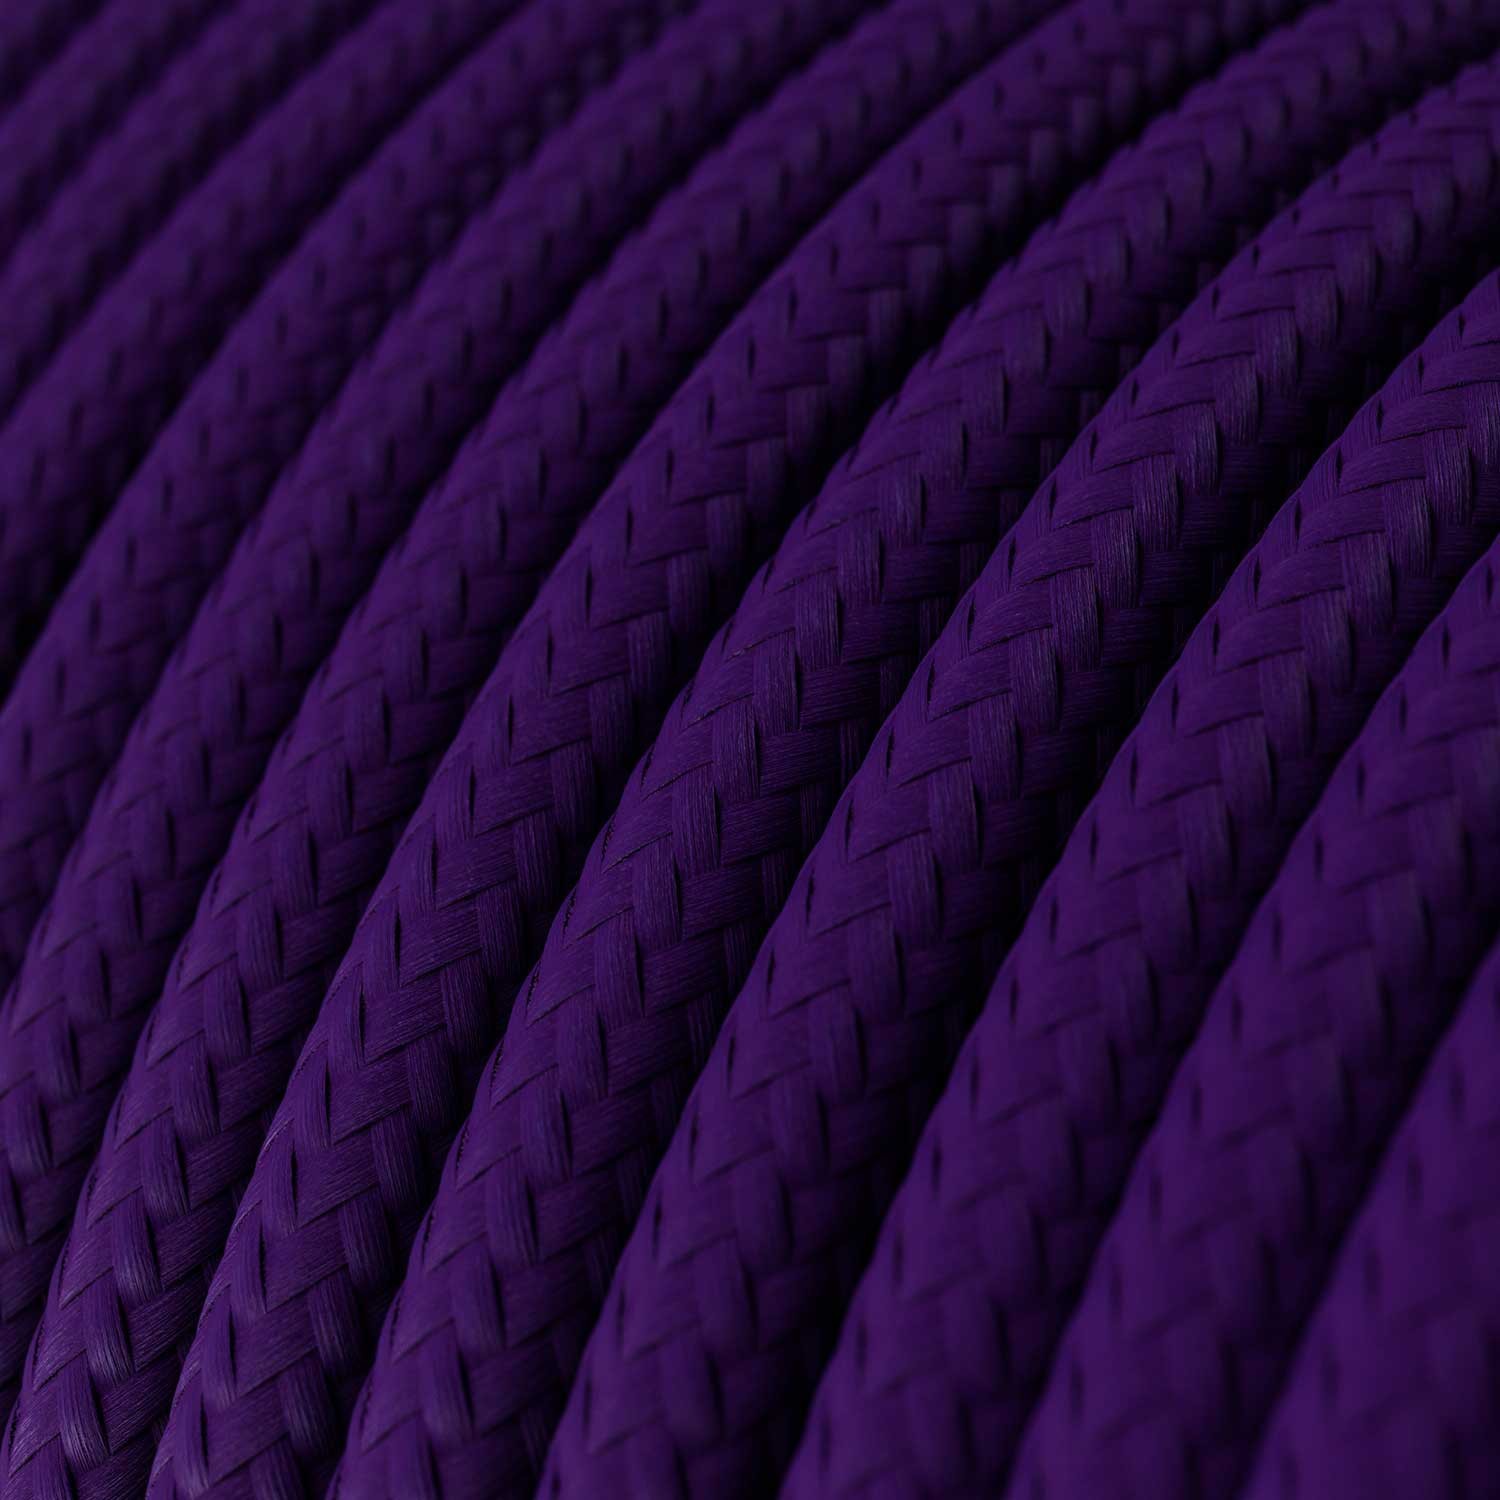 Okrugli tekstilni električni kabel RM14 - purpurna